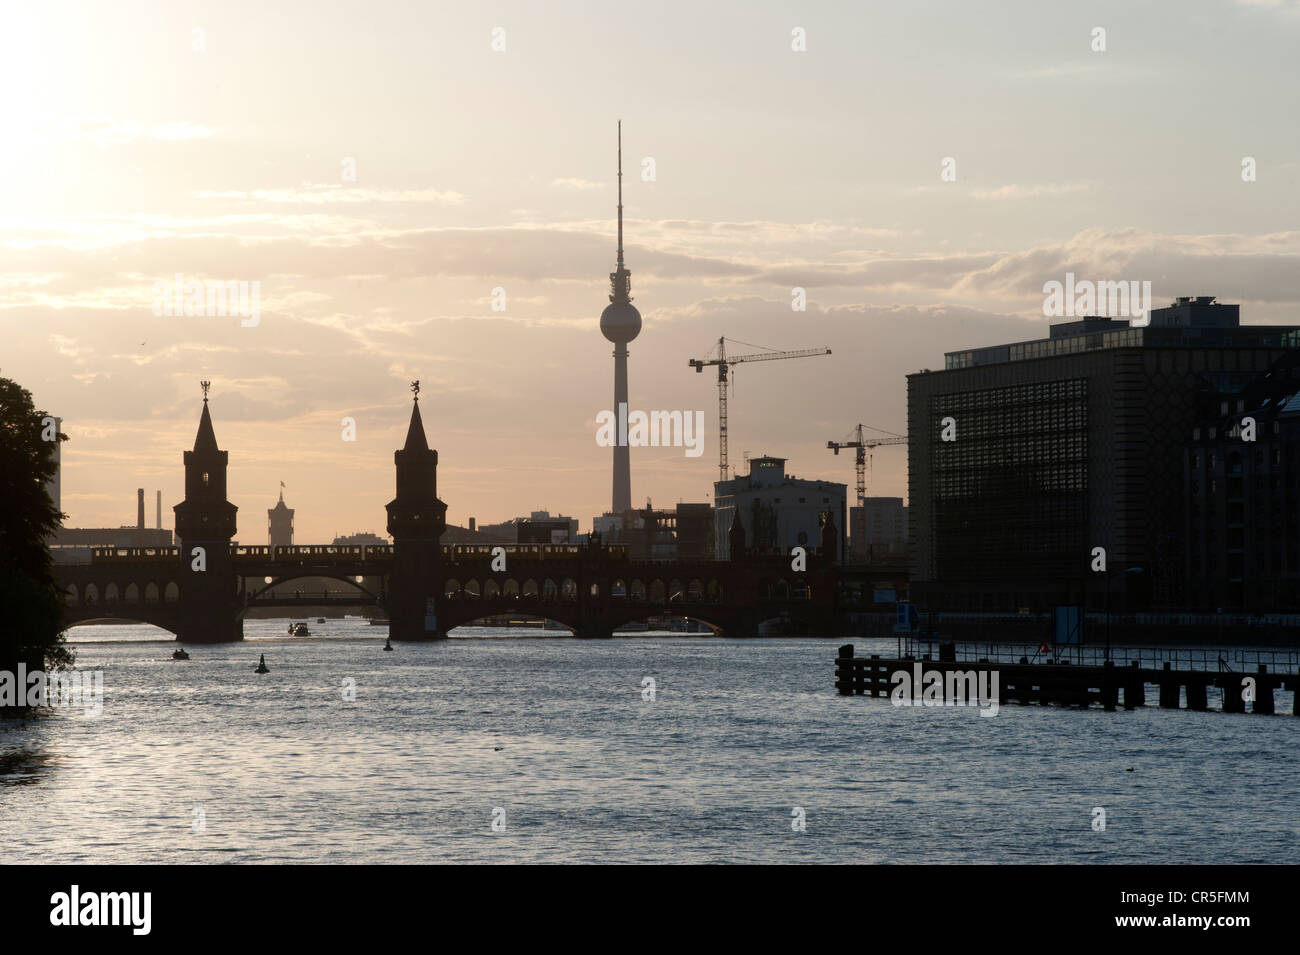 Vue sur la rivière Spree avec le pont et l'Oberbaumbruecke televisiontower en arrière-plan lors d'un coucher de soleil d'été, Berlin Banque D'Images